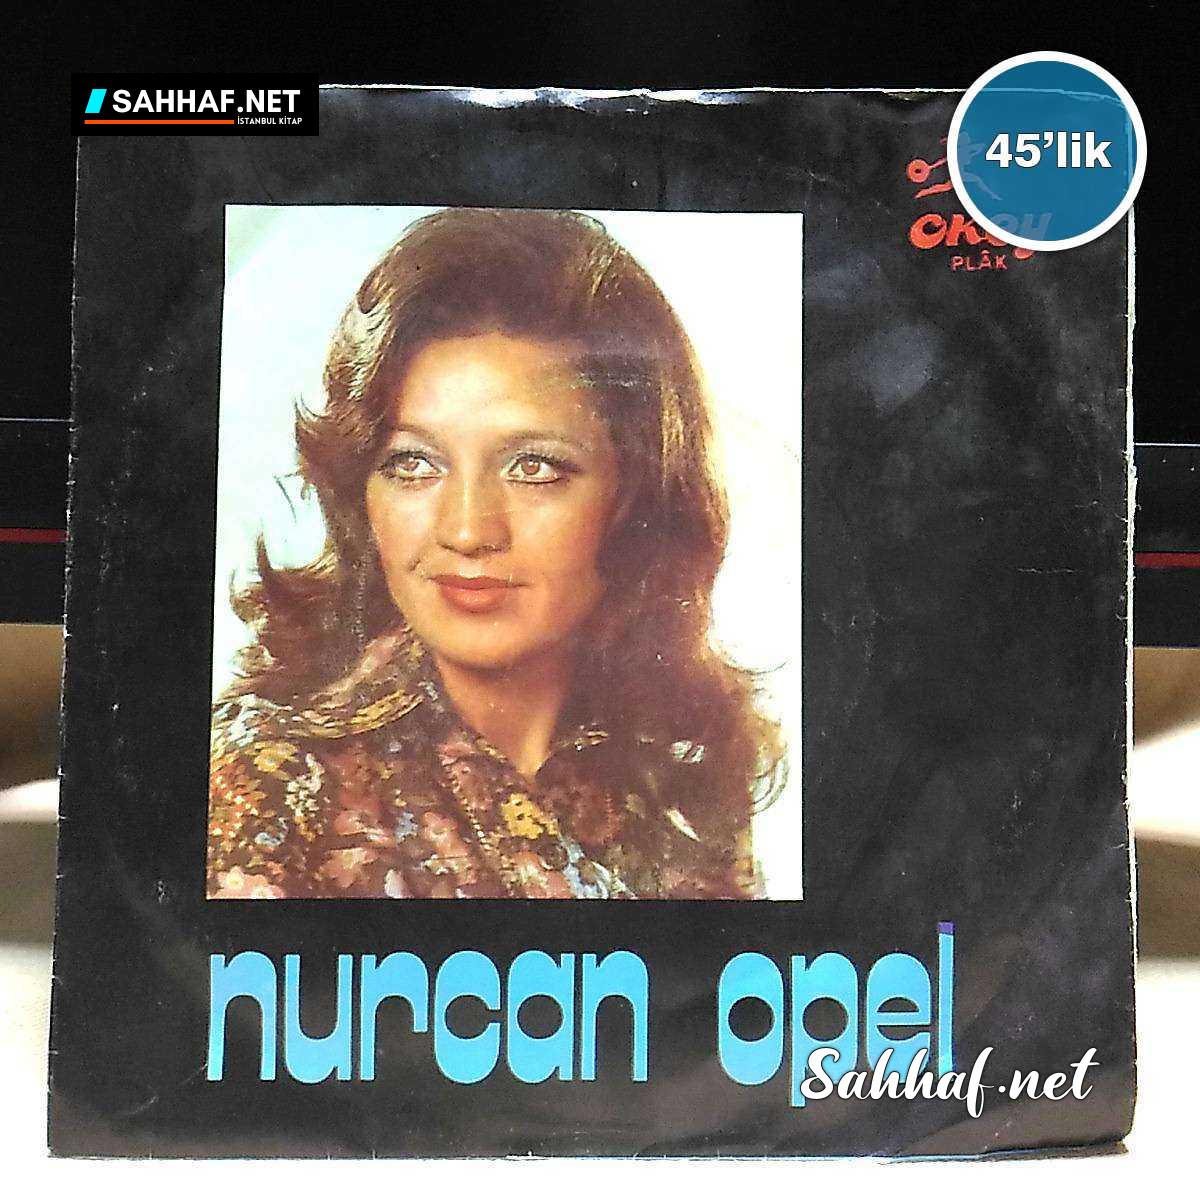 NURCAN OPEL – Gözlerin Üzüm Karası – Öldür Beni – 45lik Plak Sahhaf.Net Film Müzik